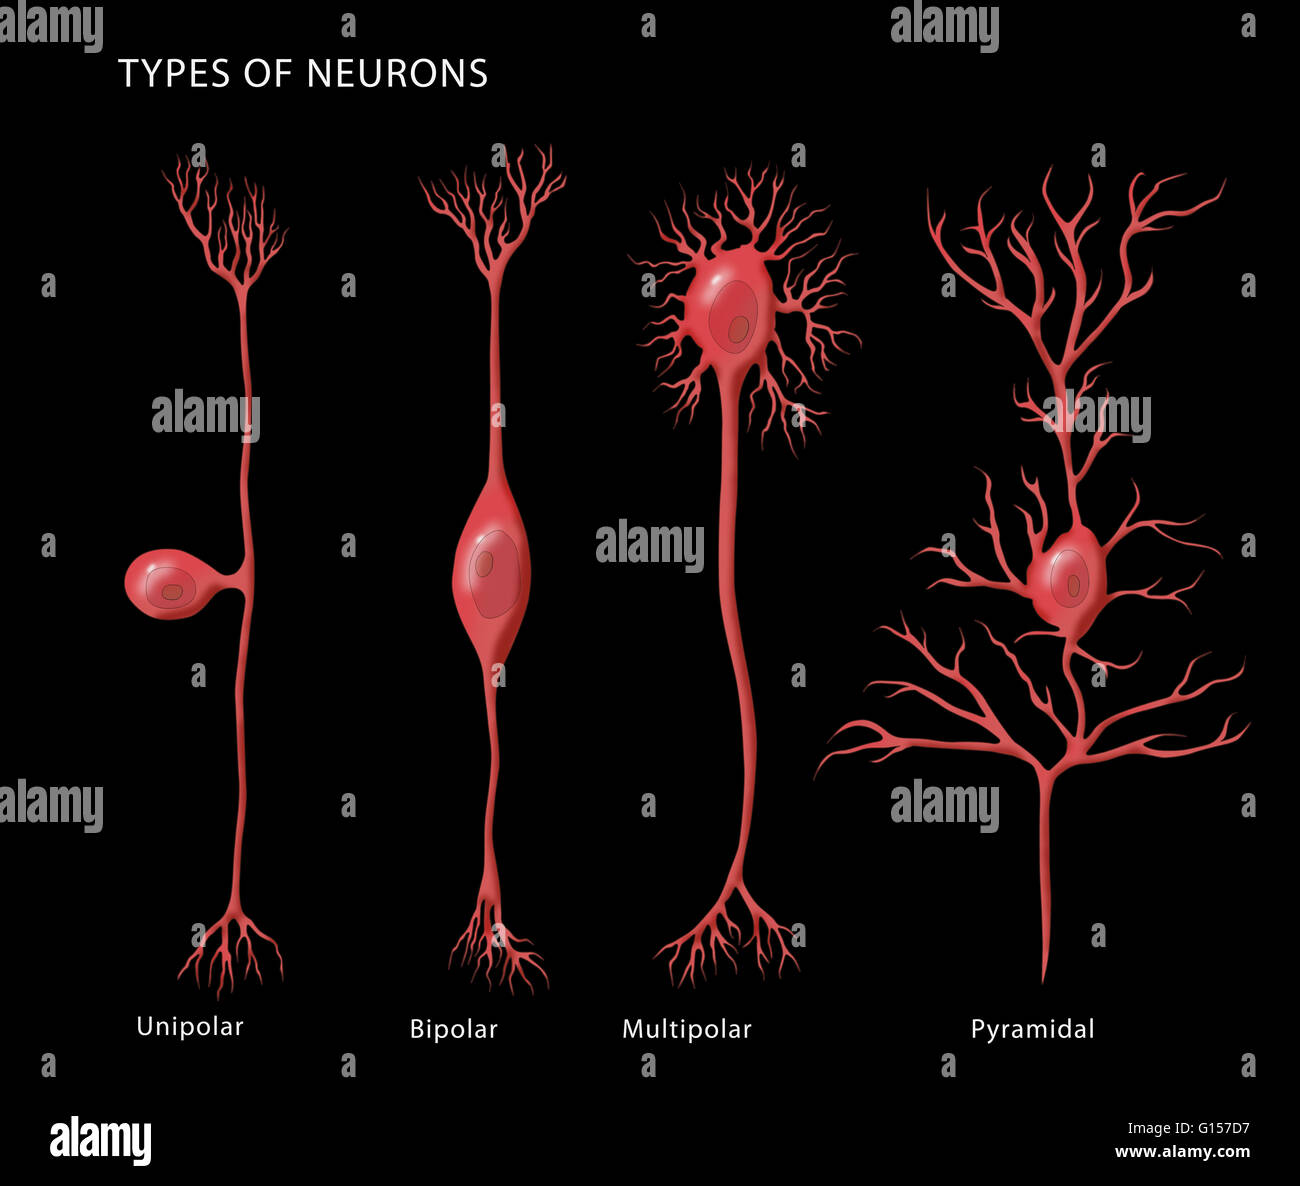 Illustration de l'étiquette de base les types de neurones, de gauche à droite : unipolaire, bipolaire, multipolaire, et pyramidale. Banque D'Images